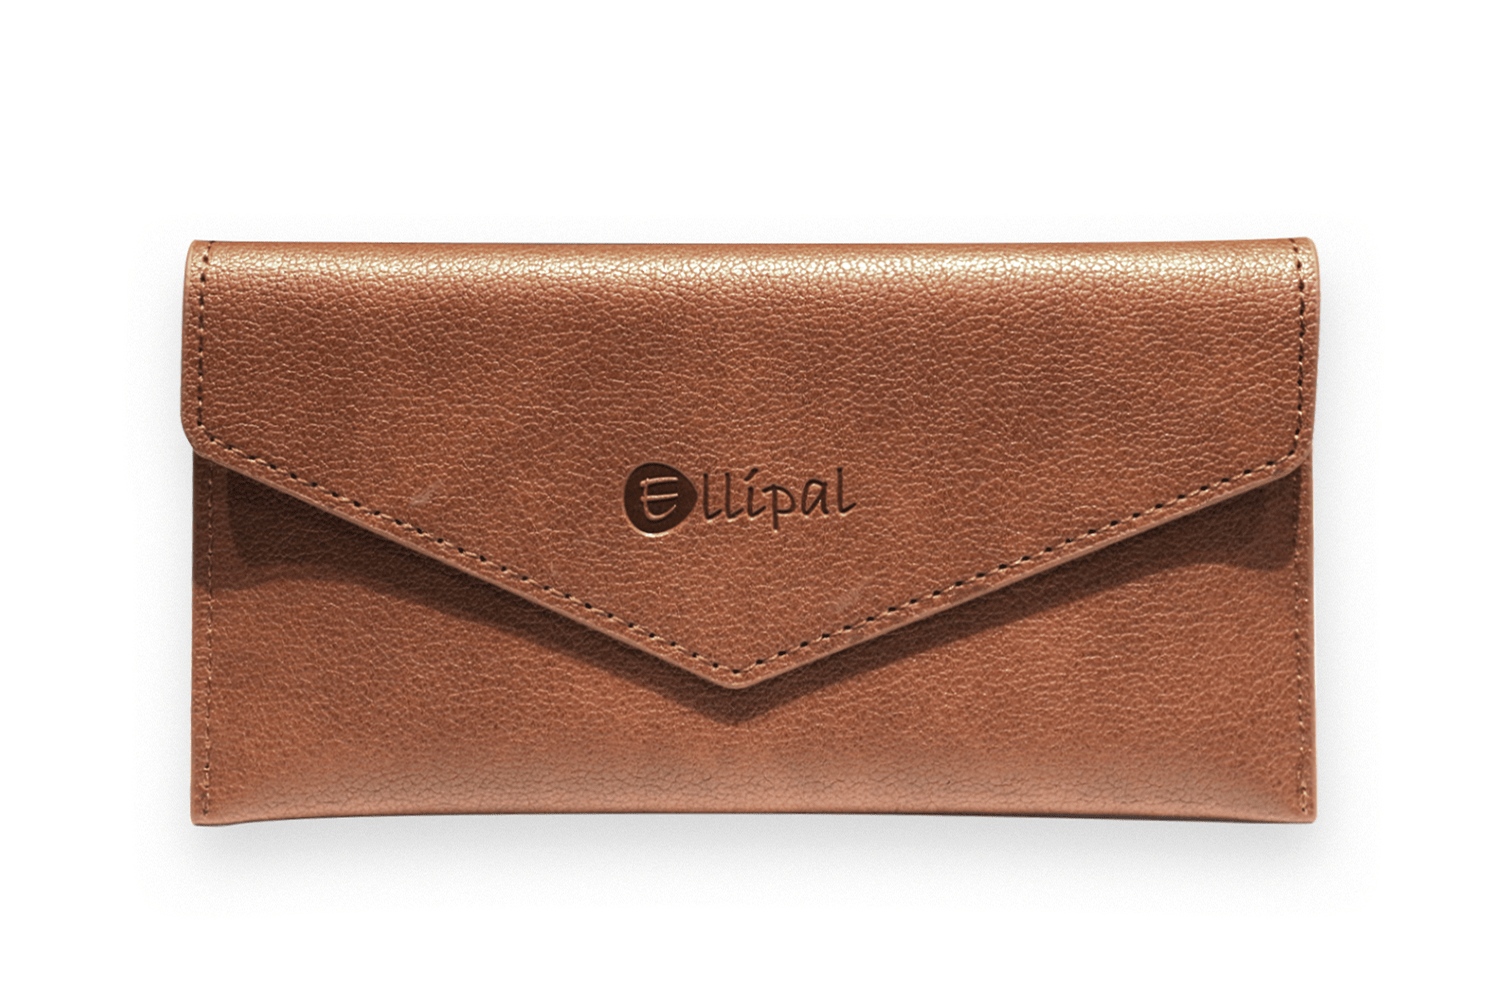 #product_nELLIPAL Titan Caseame# - ELLIPAL